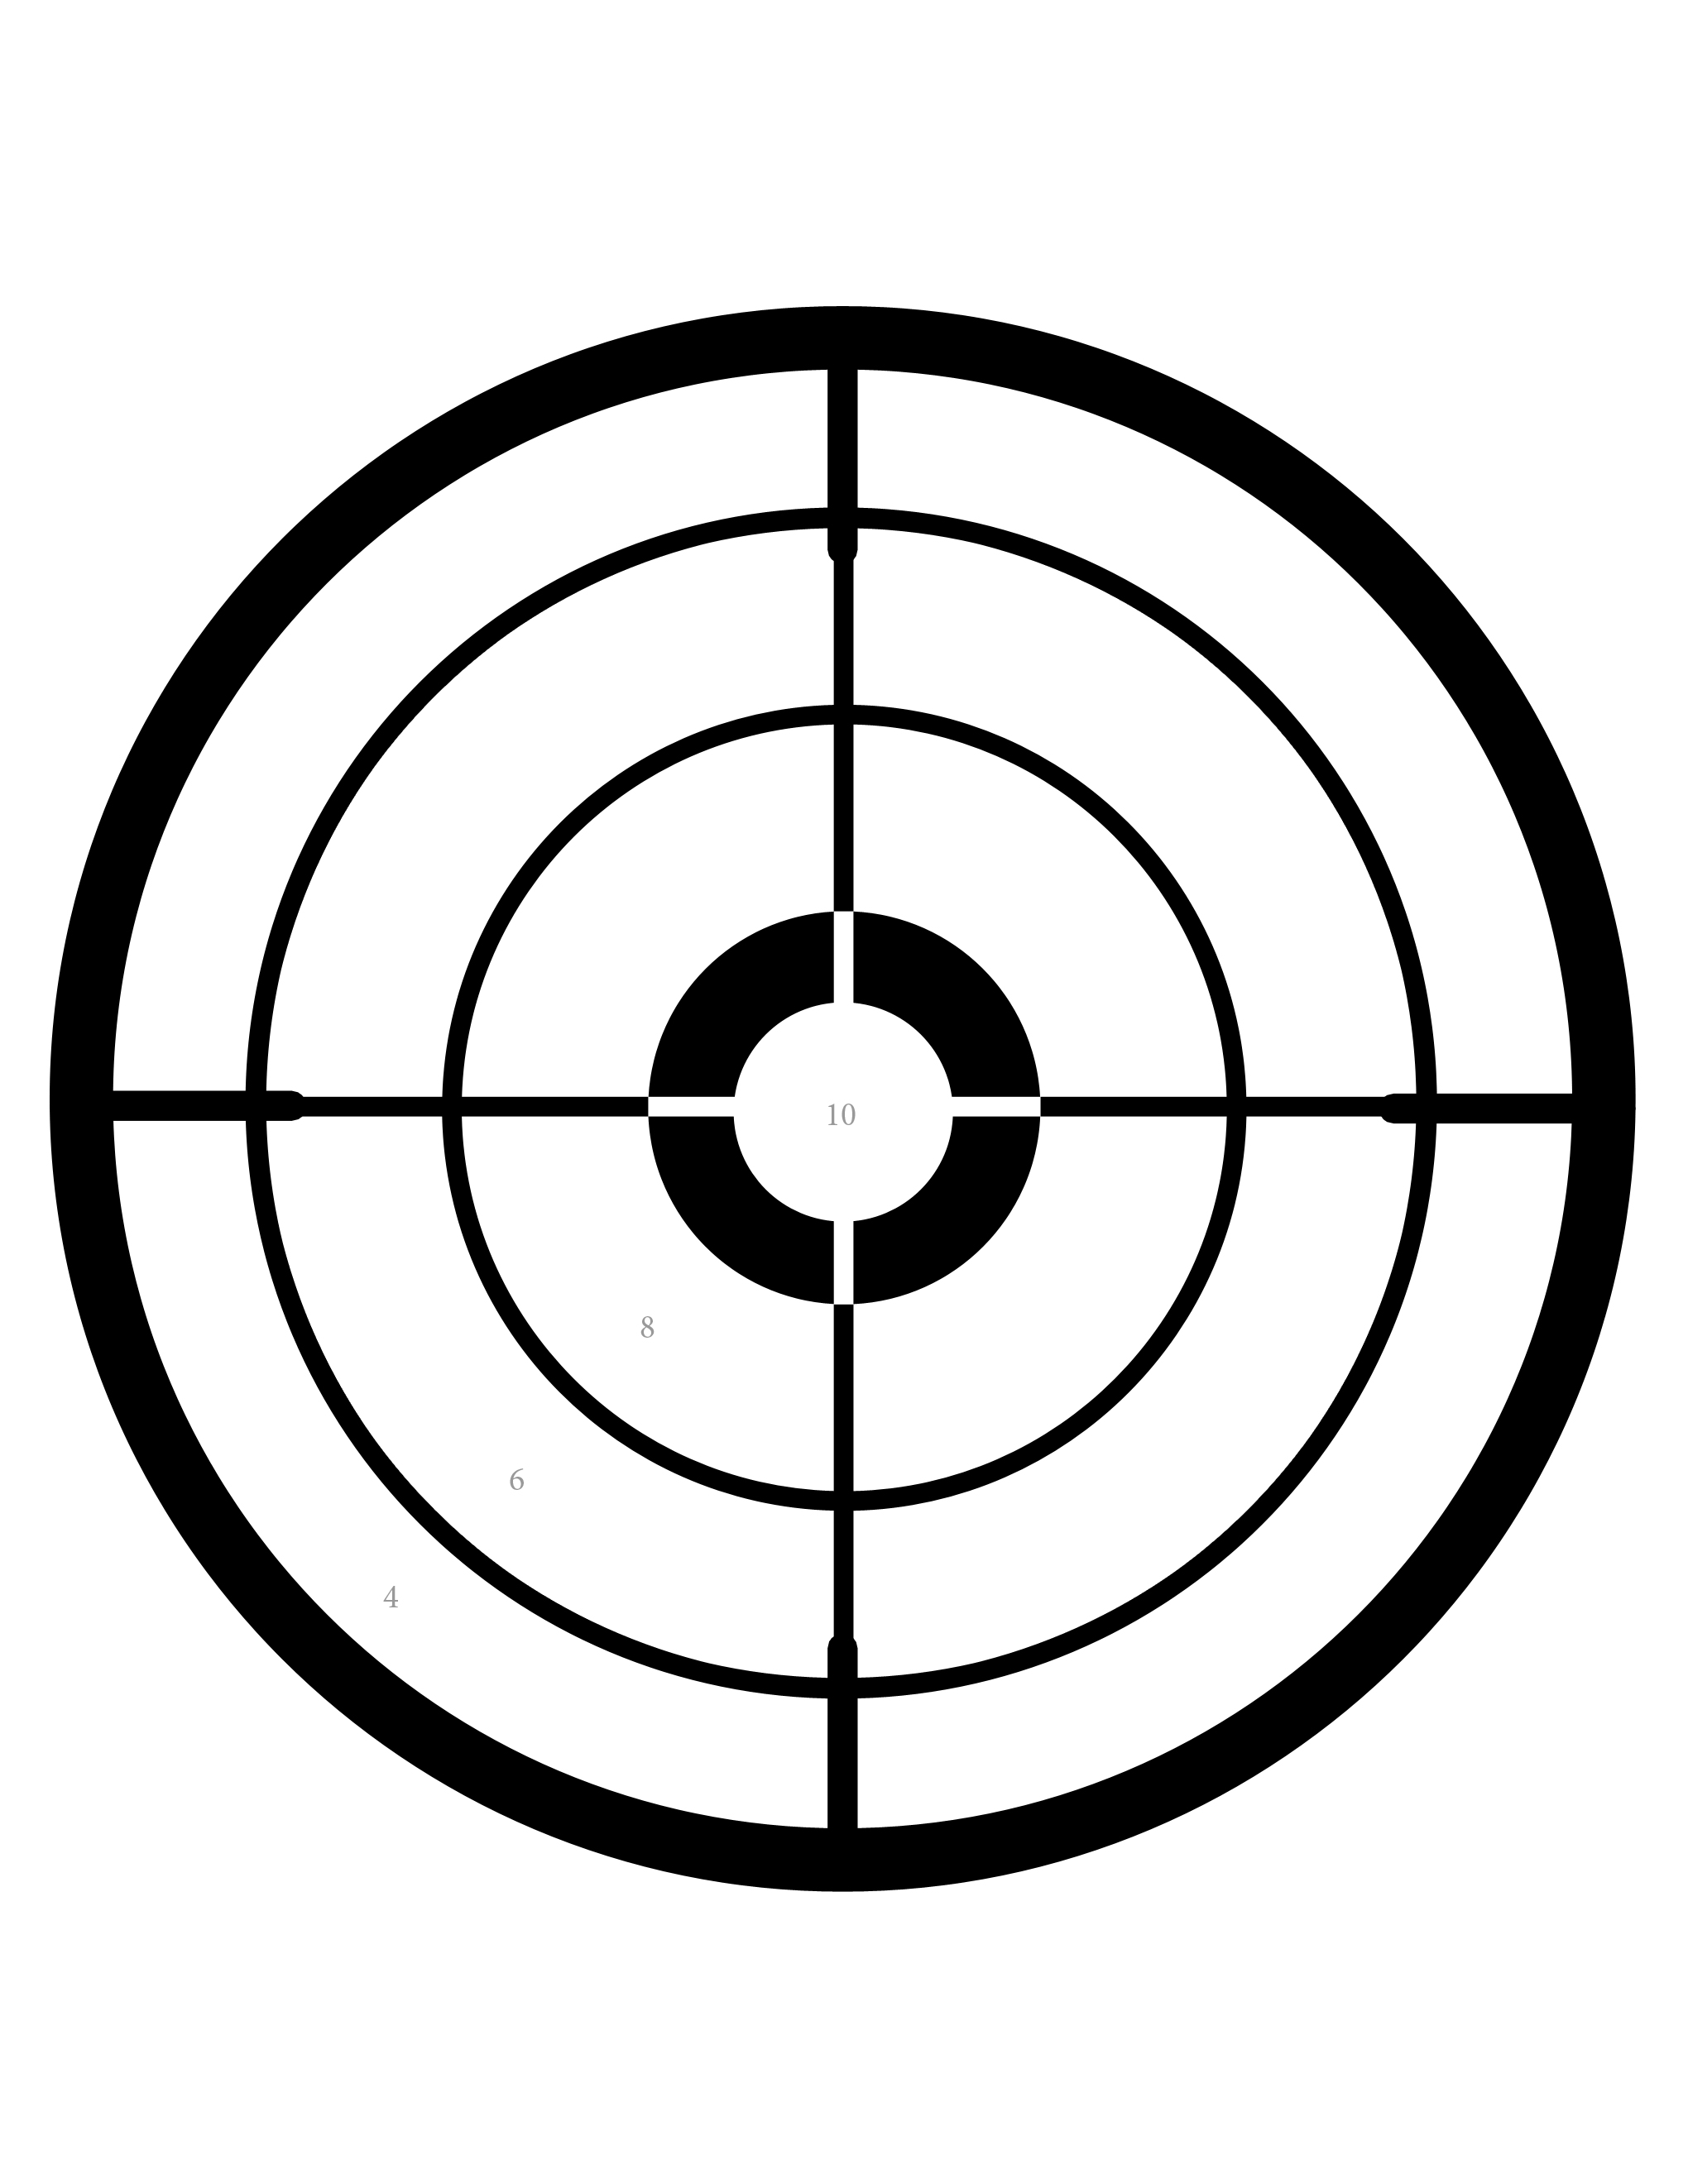 Free Printable Shooting Targets - Printable World Holiday